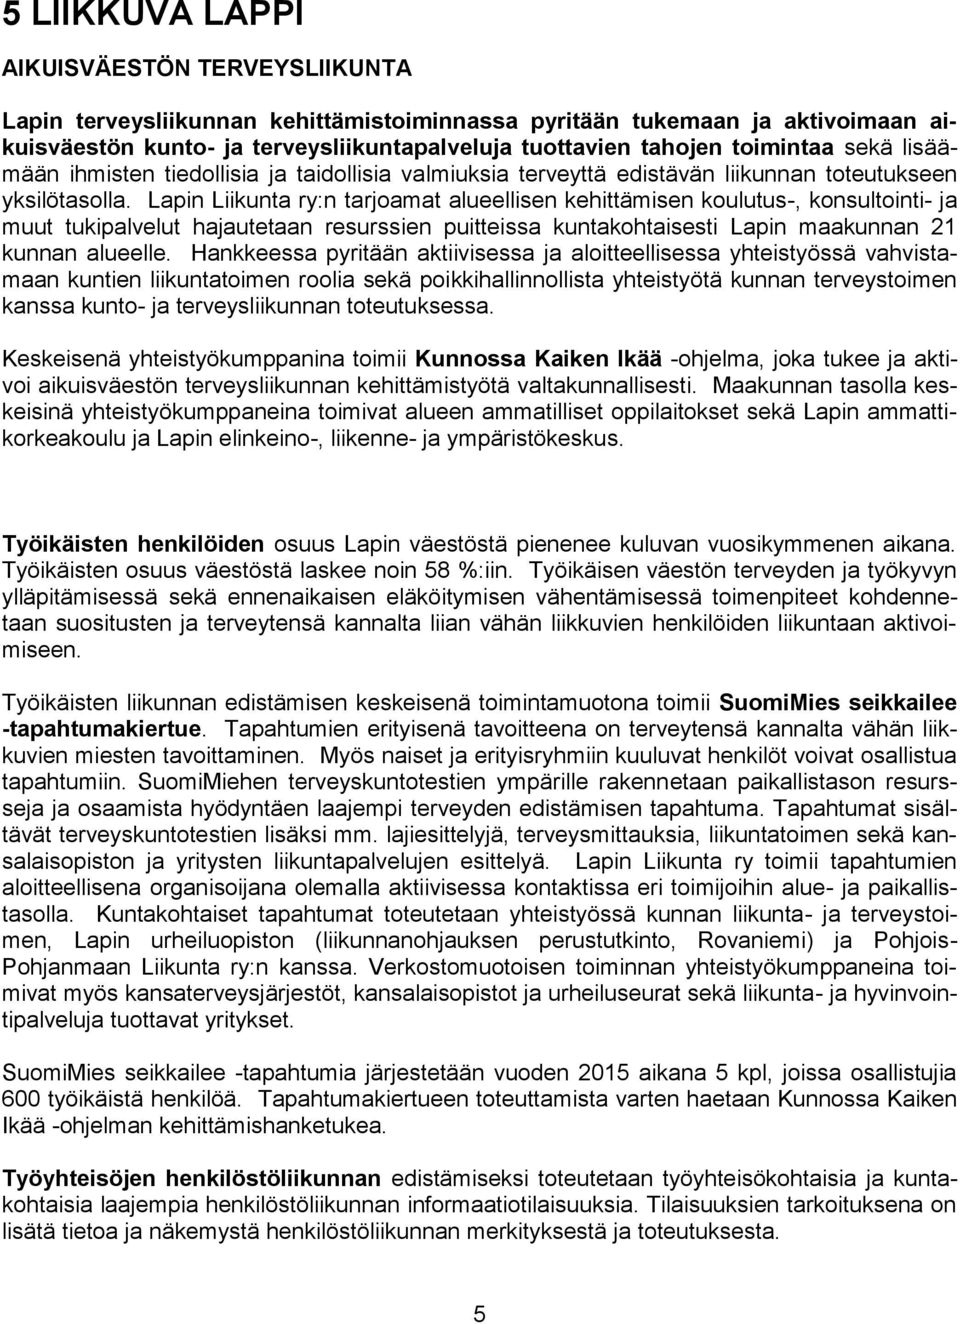 Lapin Liikunta ry:n tarjoamat alueellisen kehittämisen koulutus-, konsultointi- ja muut tukipalvelut hajautetaan resurssien puitteissa kuntakohtaisesti Lapin maakunnan 21 kunnan alueelle.